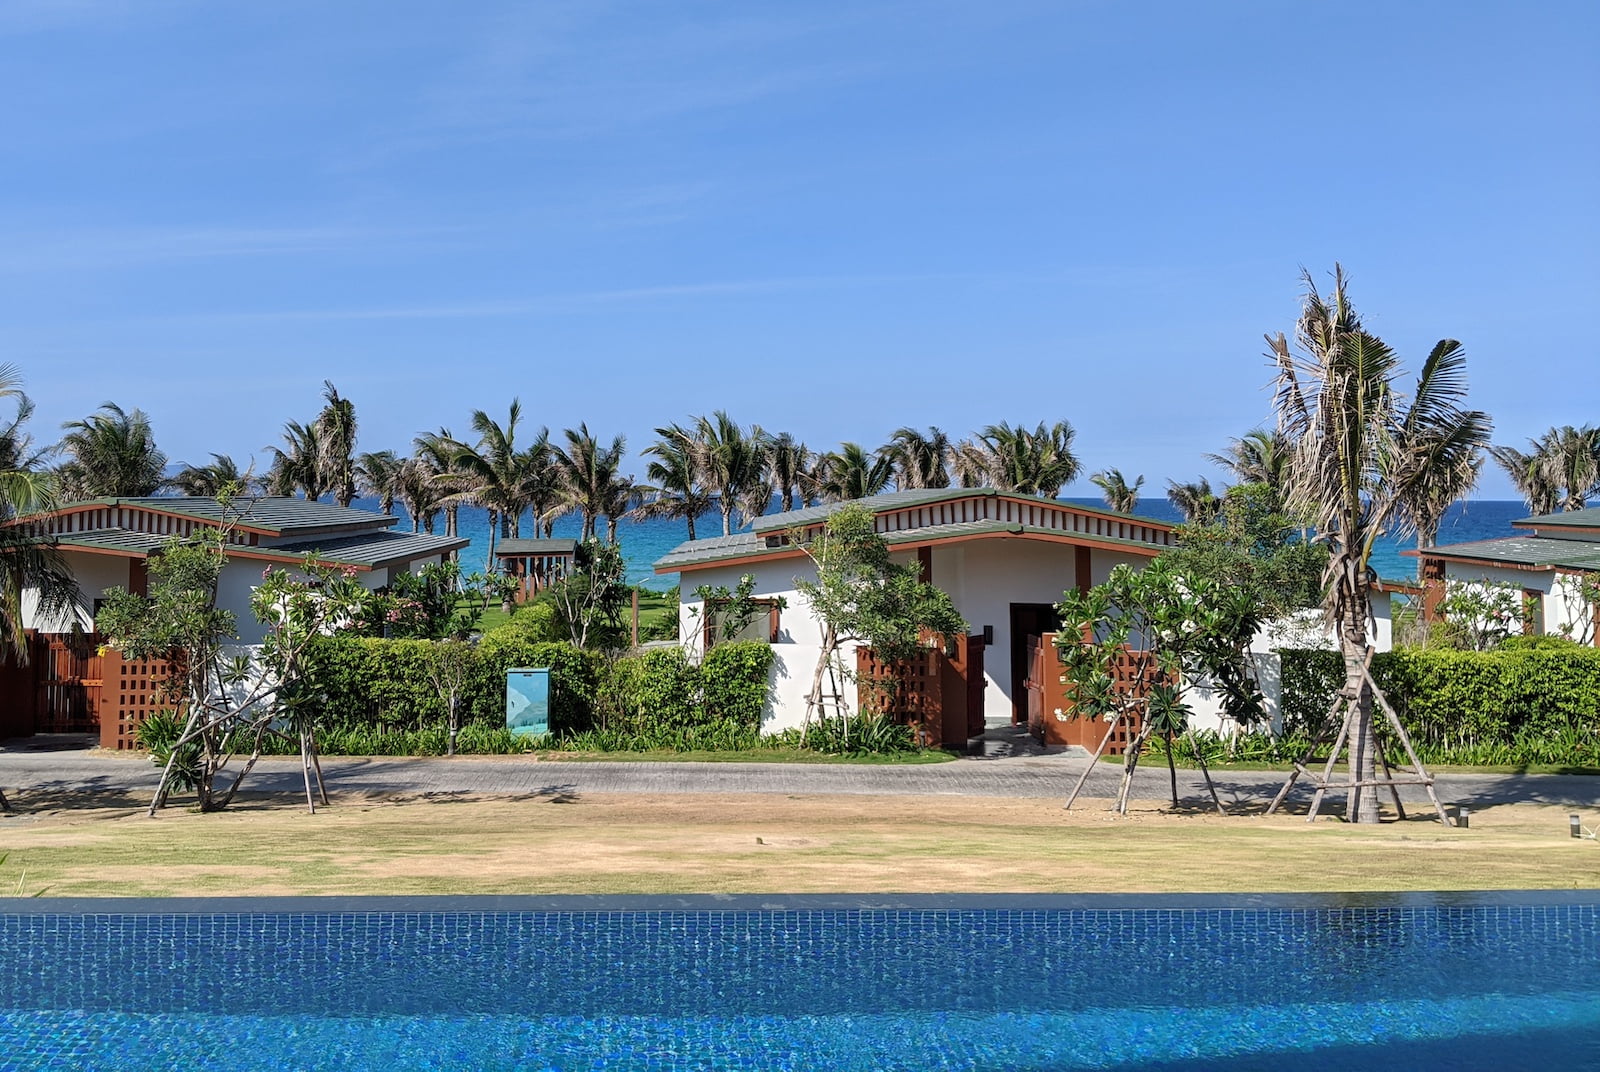 Ký sự đi chơi nghỉ dưỡng Cam Ranh 3N2Đ chữa bệnh Runner's Blues (chán đời) - movenpick cam ranh resort sea view pool villa